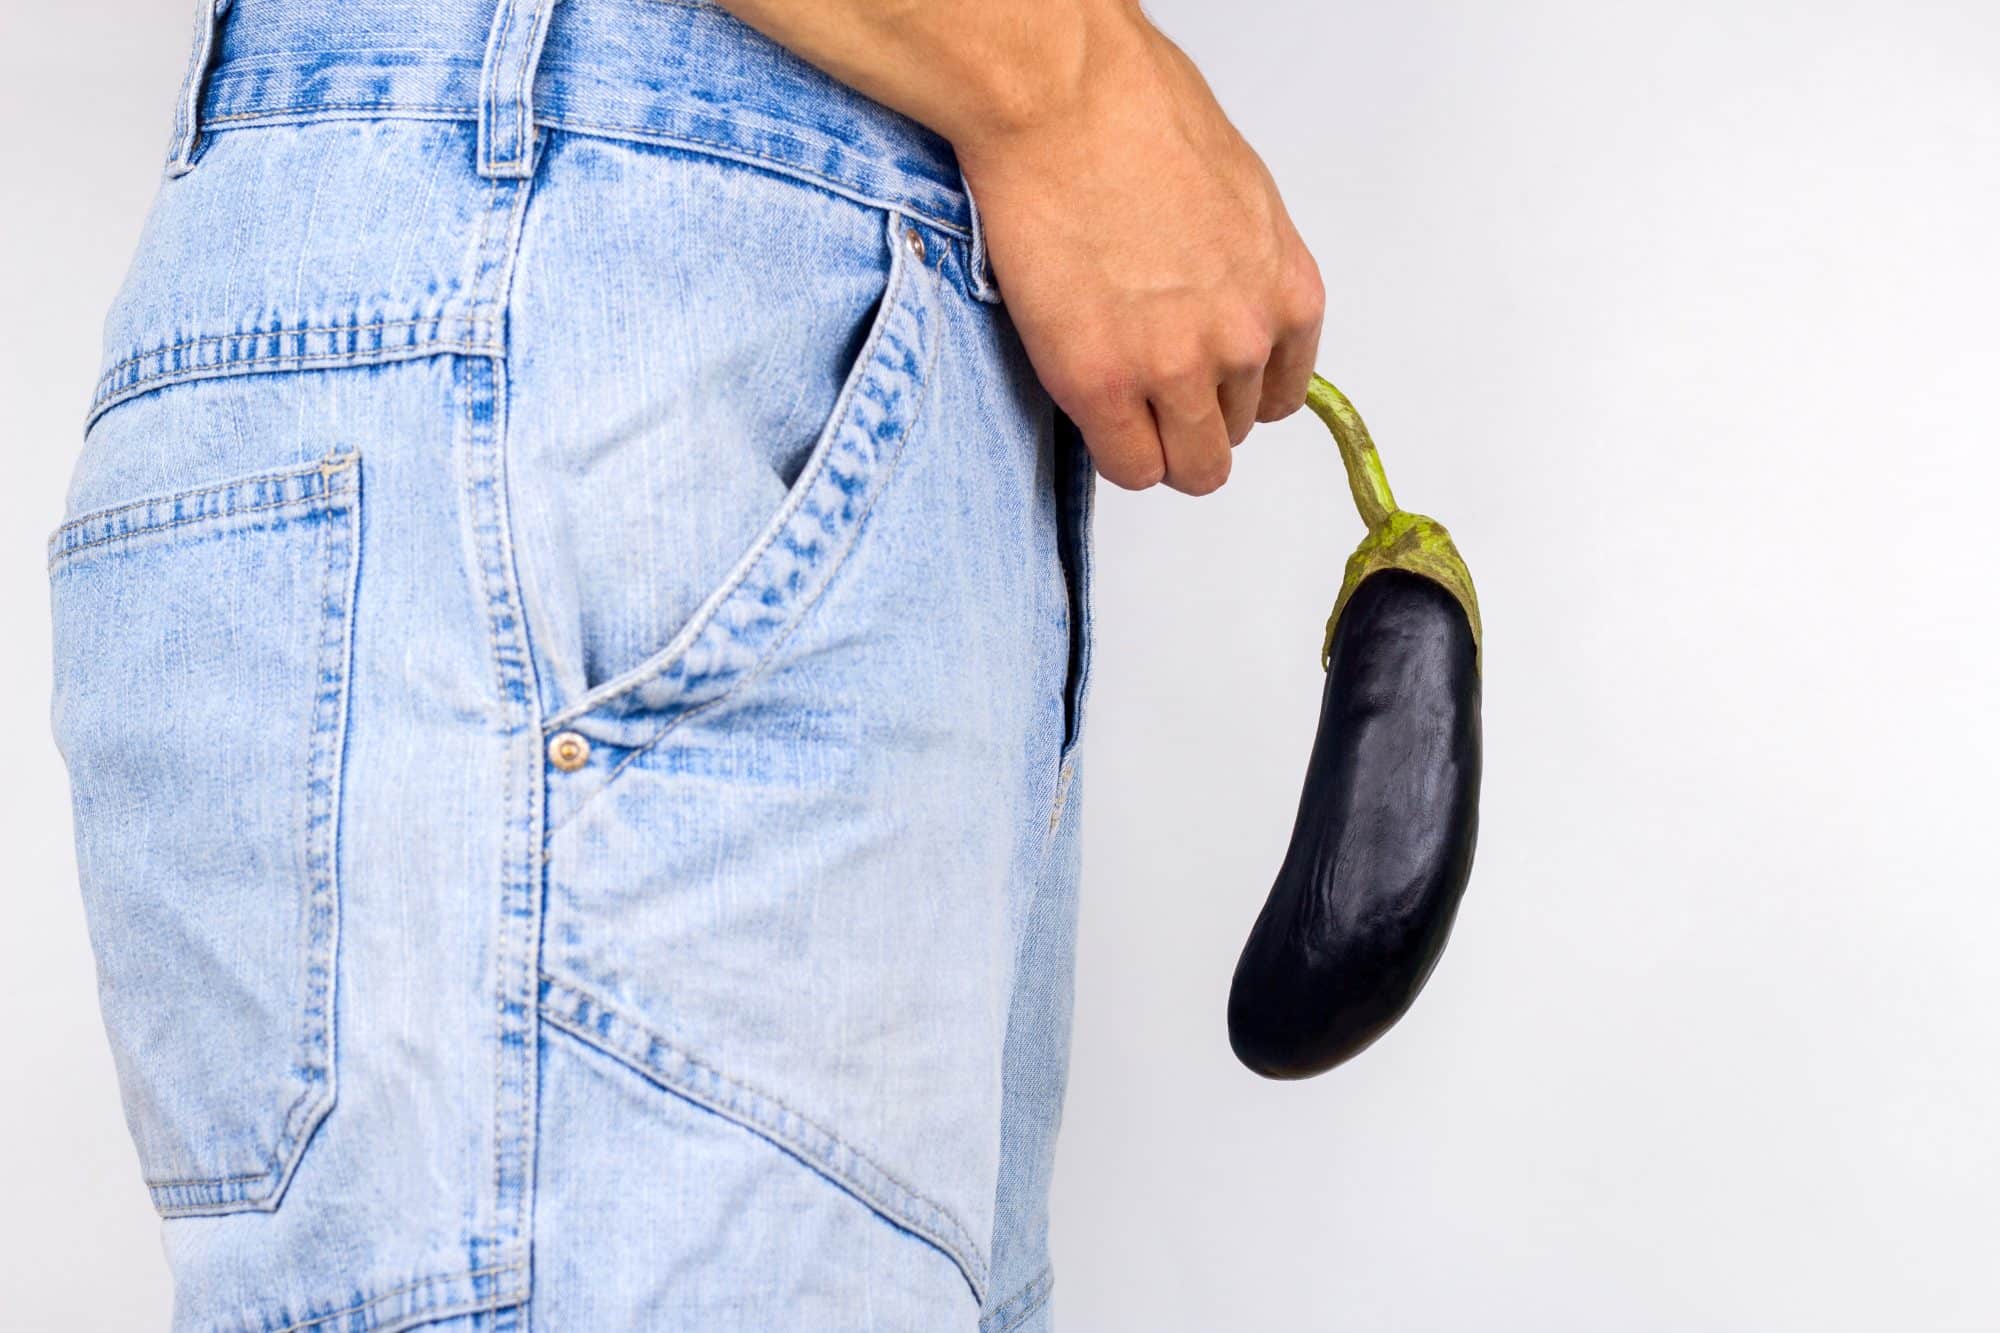 erektil dysfunksjon: Bilde av en mann som henger en frukt foran skrittet sitt